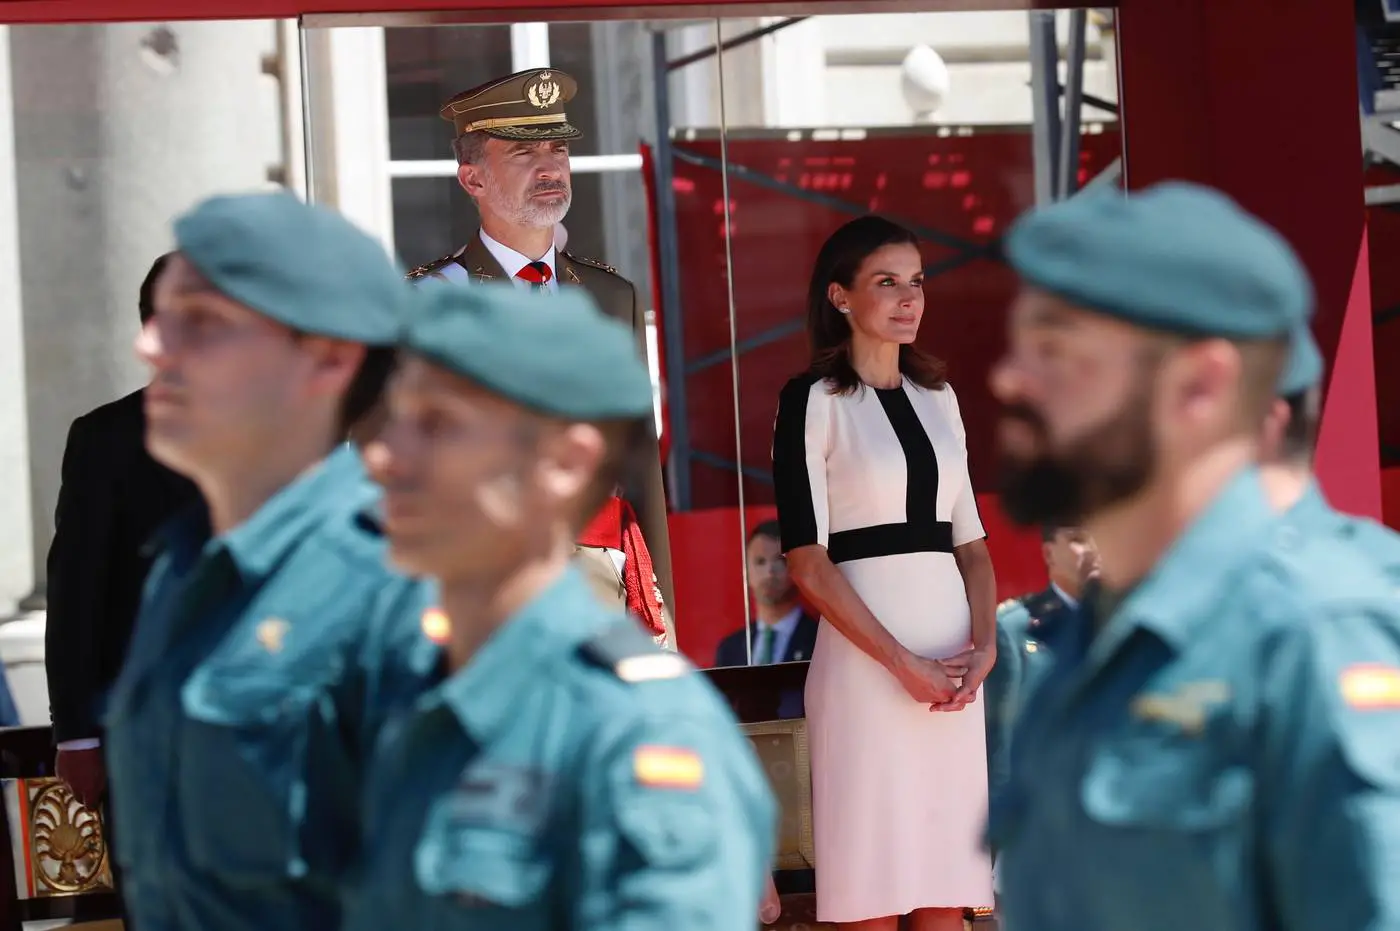 Queen Letizia in two tone carolina Herrera dress at Civil guards anniversary